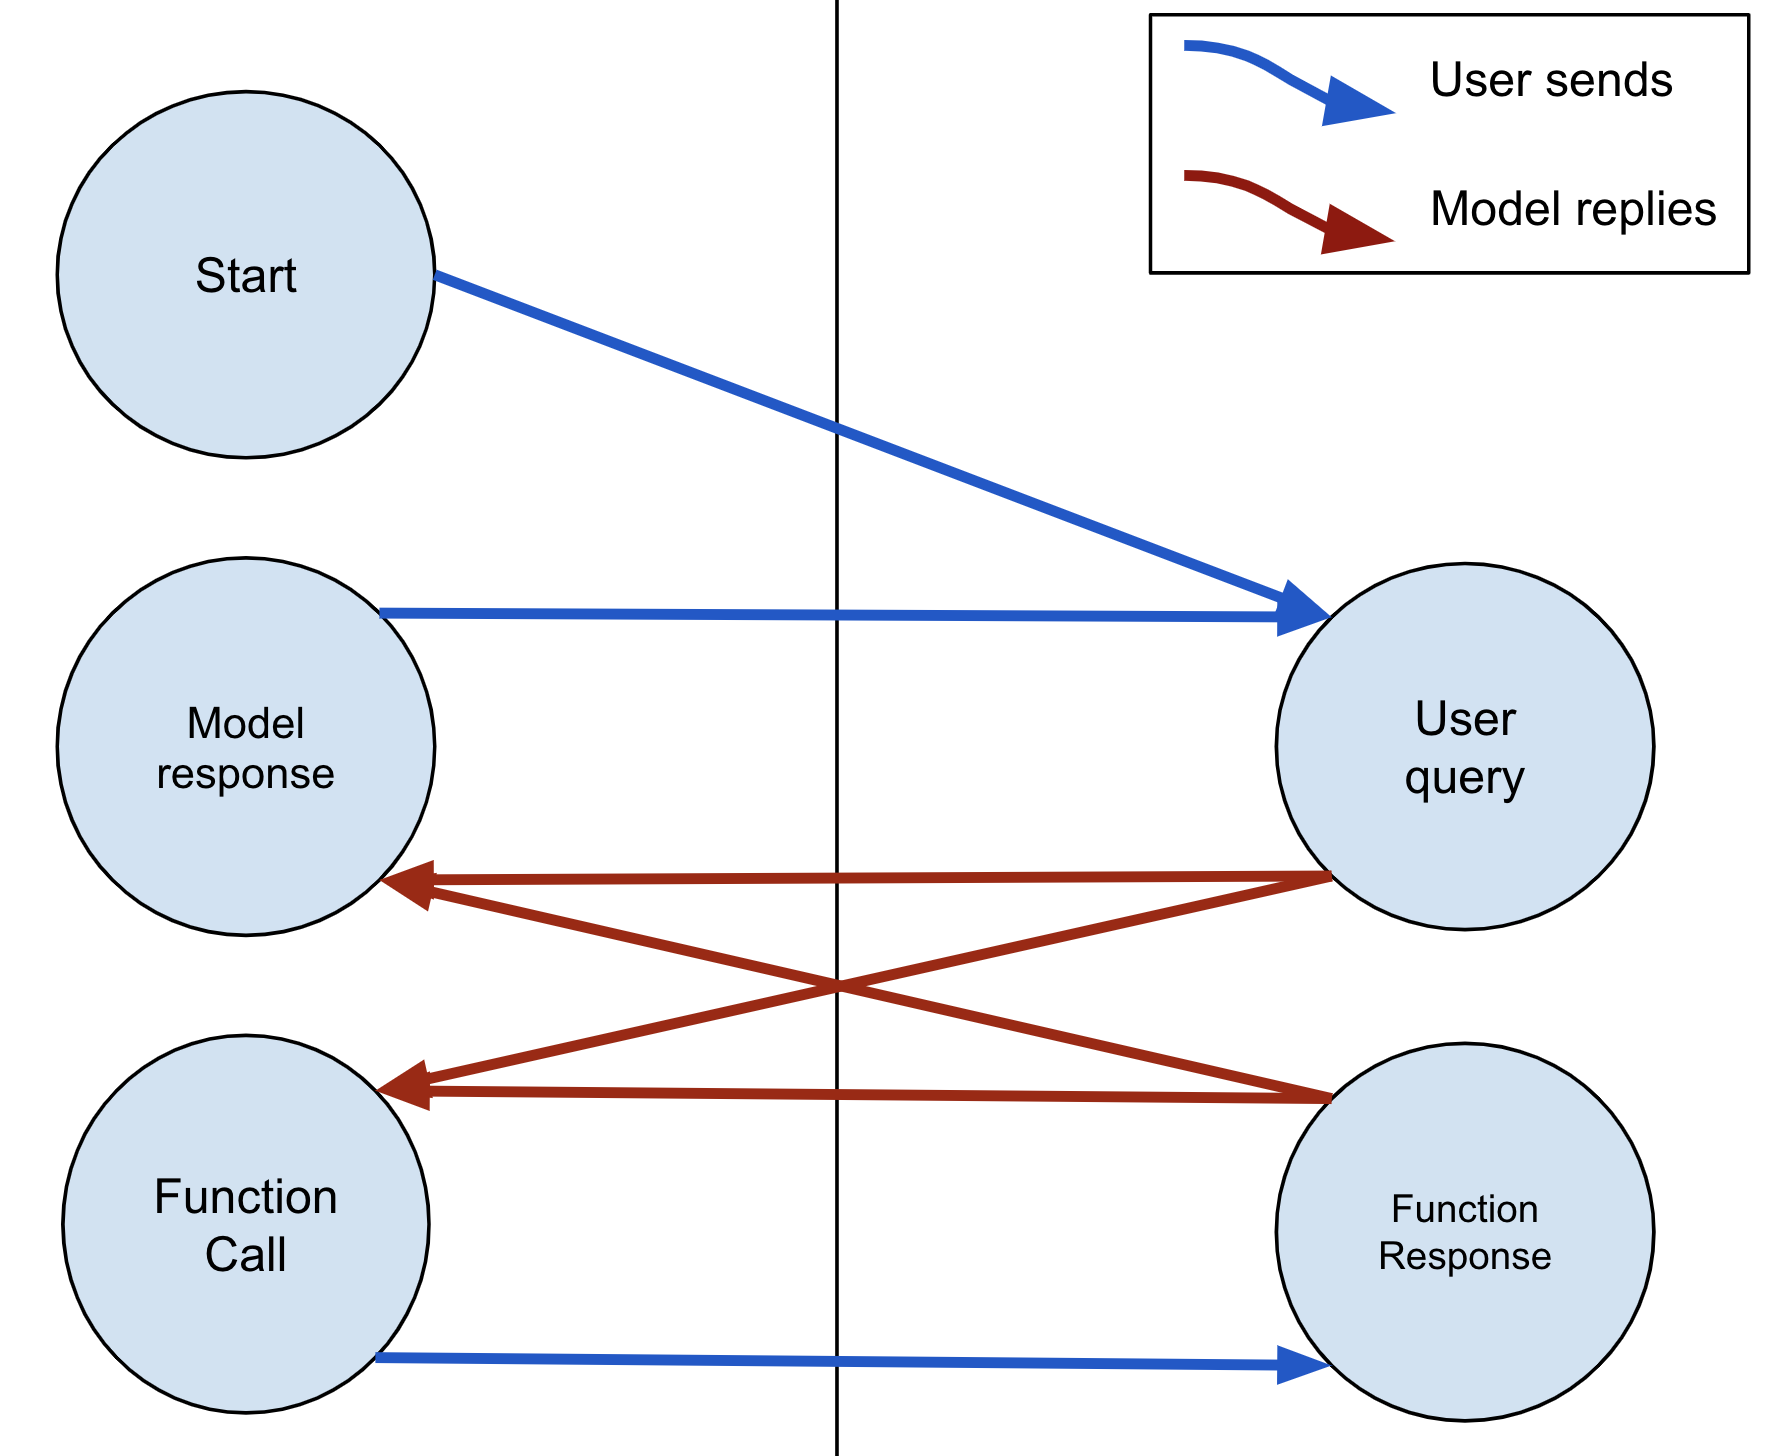 Модель всегда может ответить текстом или вызовом FunctionCall. Если модель отправляет FunctionCall, пользователь должен ответить FunctionResponse.